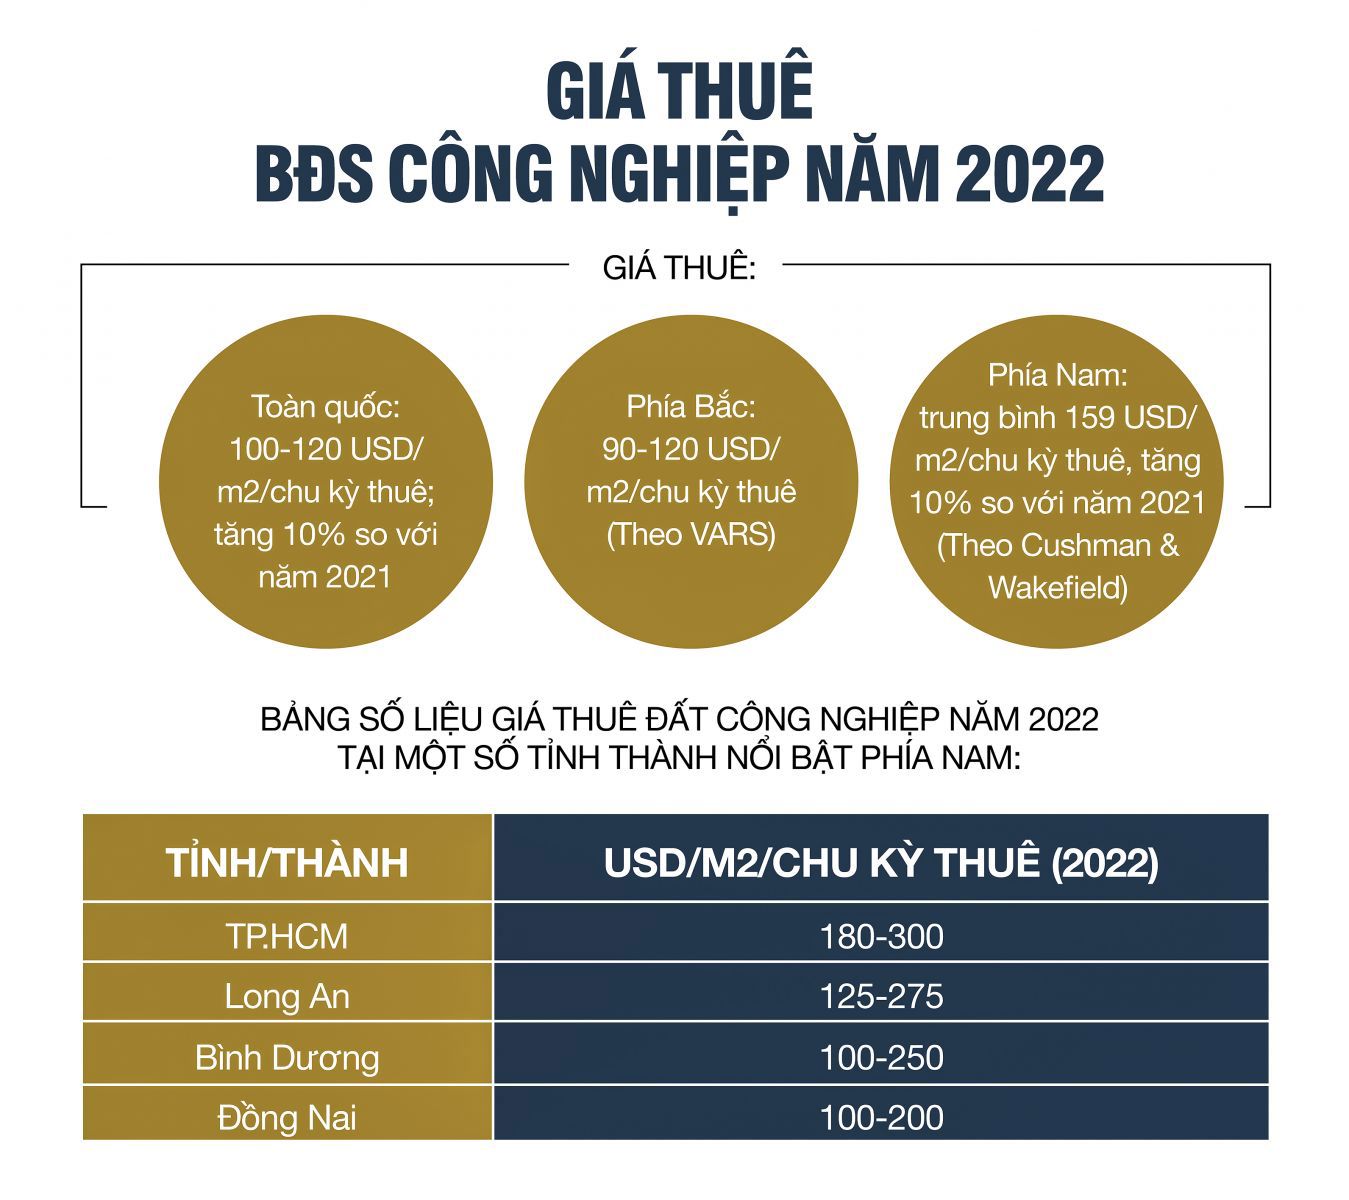 Bất động sản công nghiệp Việt Nam: “Ngôi sao hy vọng“ của thị trường - Ảnh 3